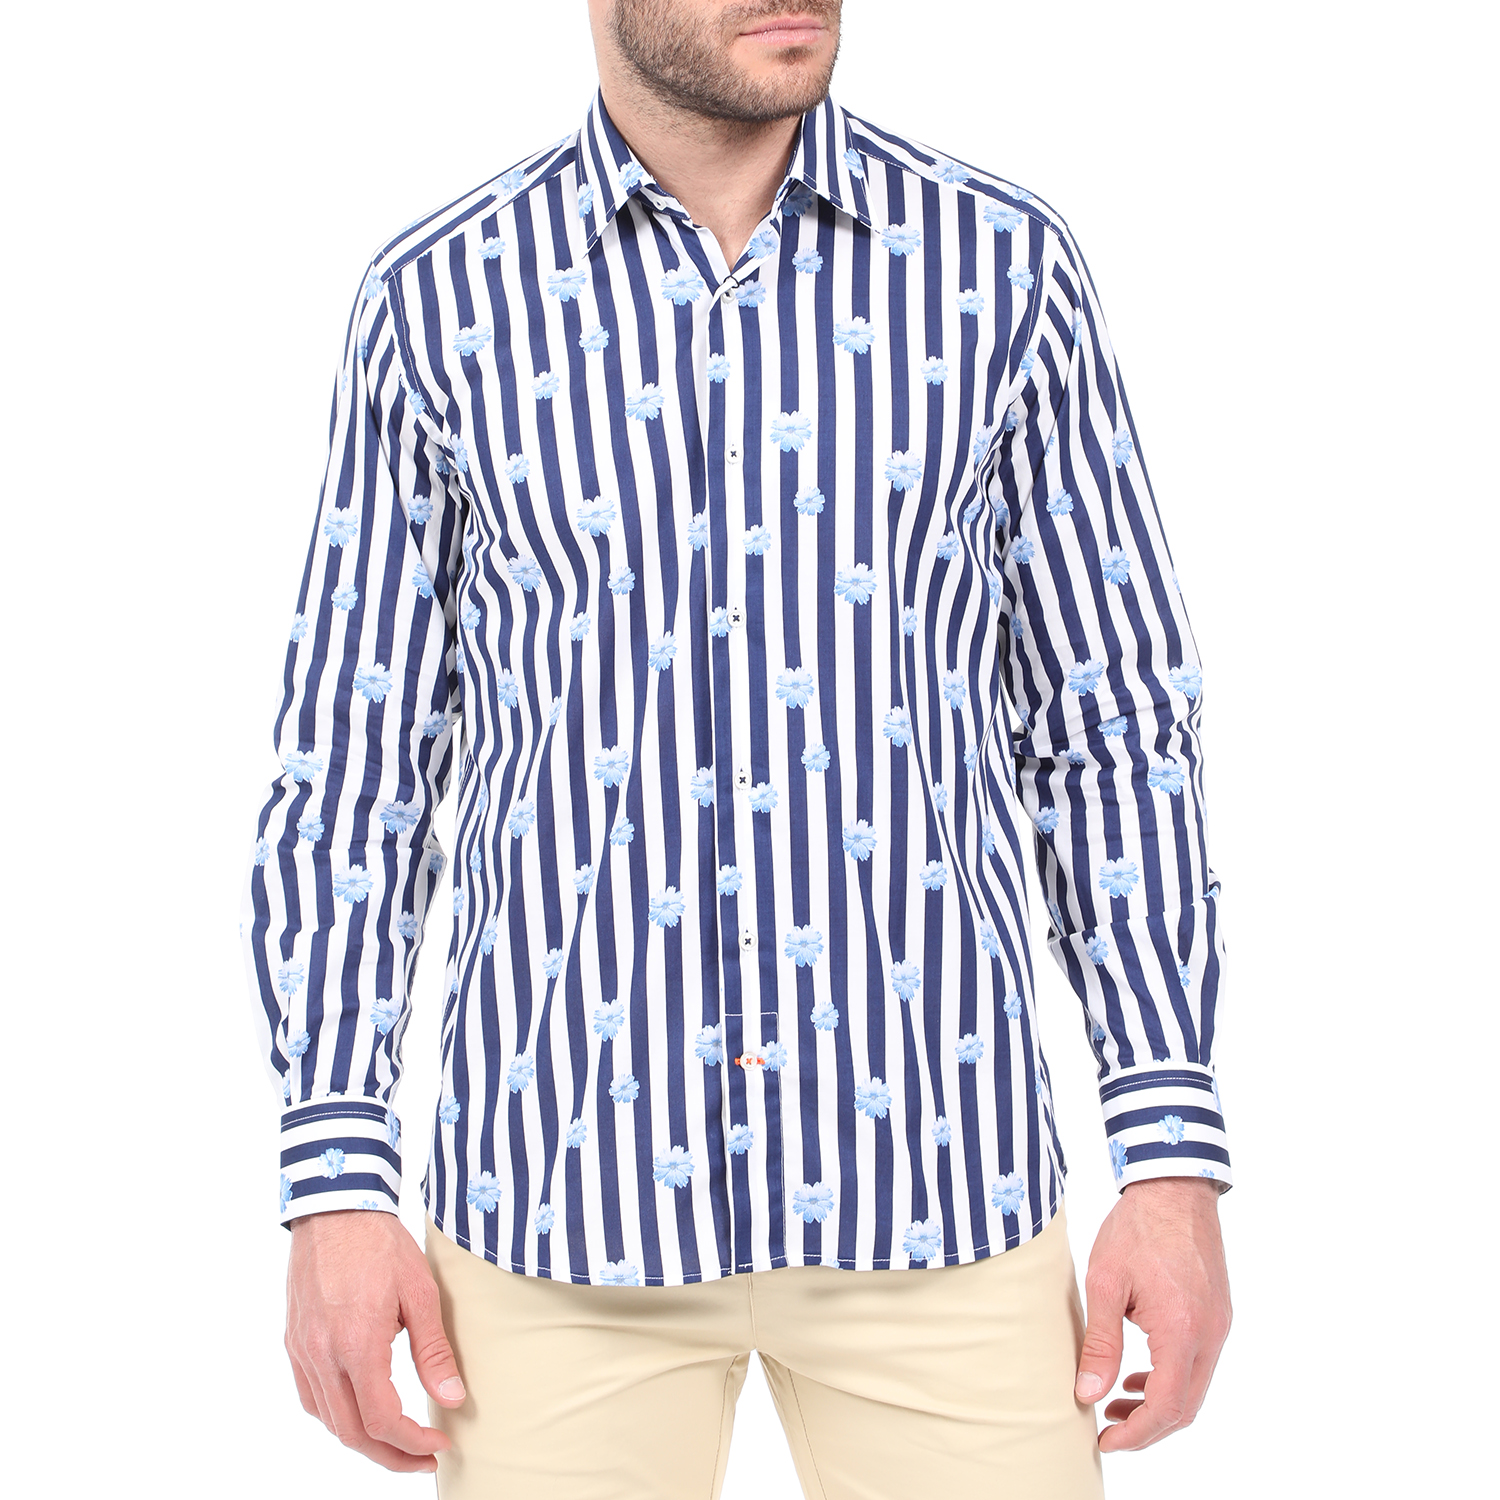 Ανδρικά/Ρούχα/Πουκάμισα/Μακρυμάνικα DORS - Ανδρικό πουκάμισο DORS λευκό μπλε